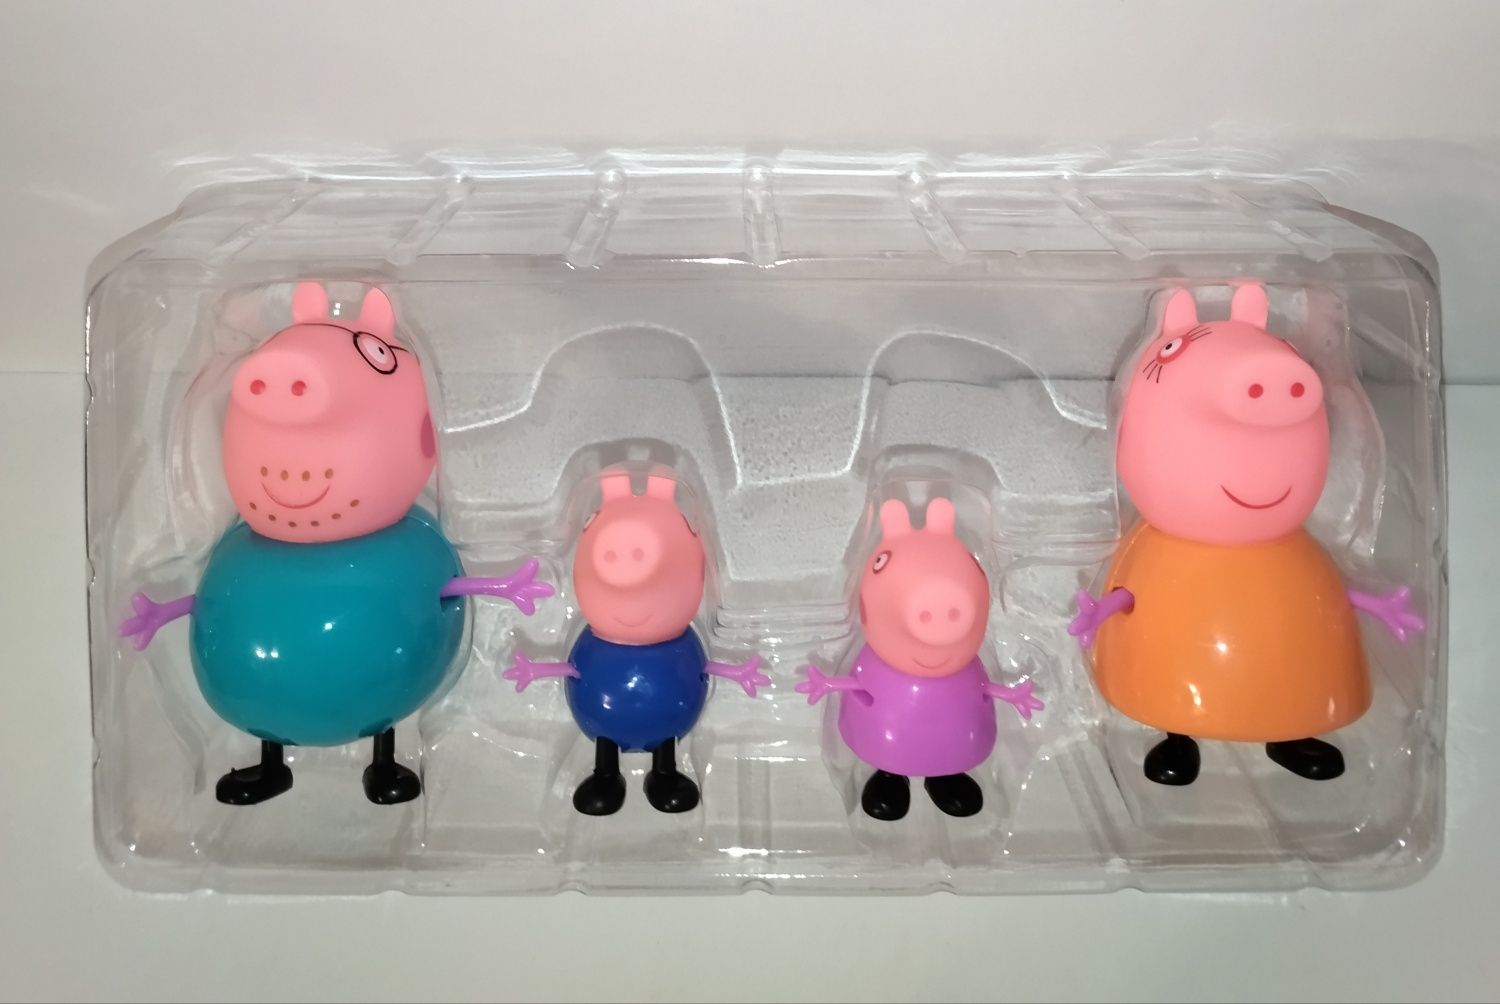 Набор героев Свинка Пеппа и Семья, 4 - персонажа.